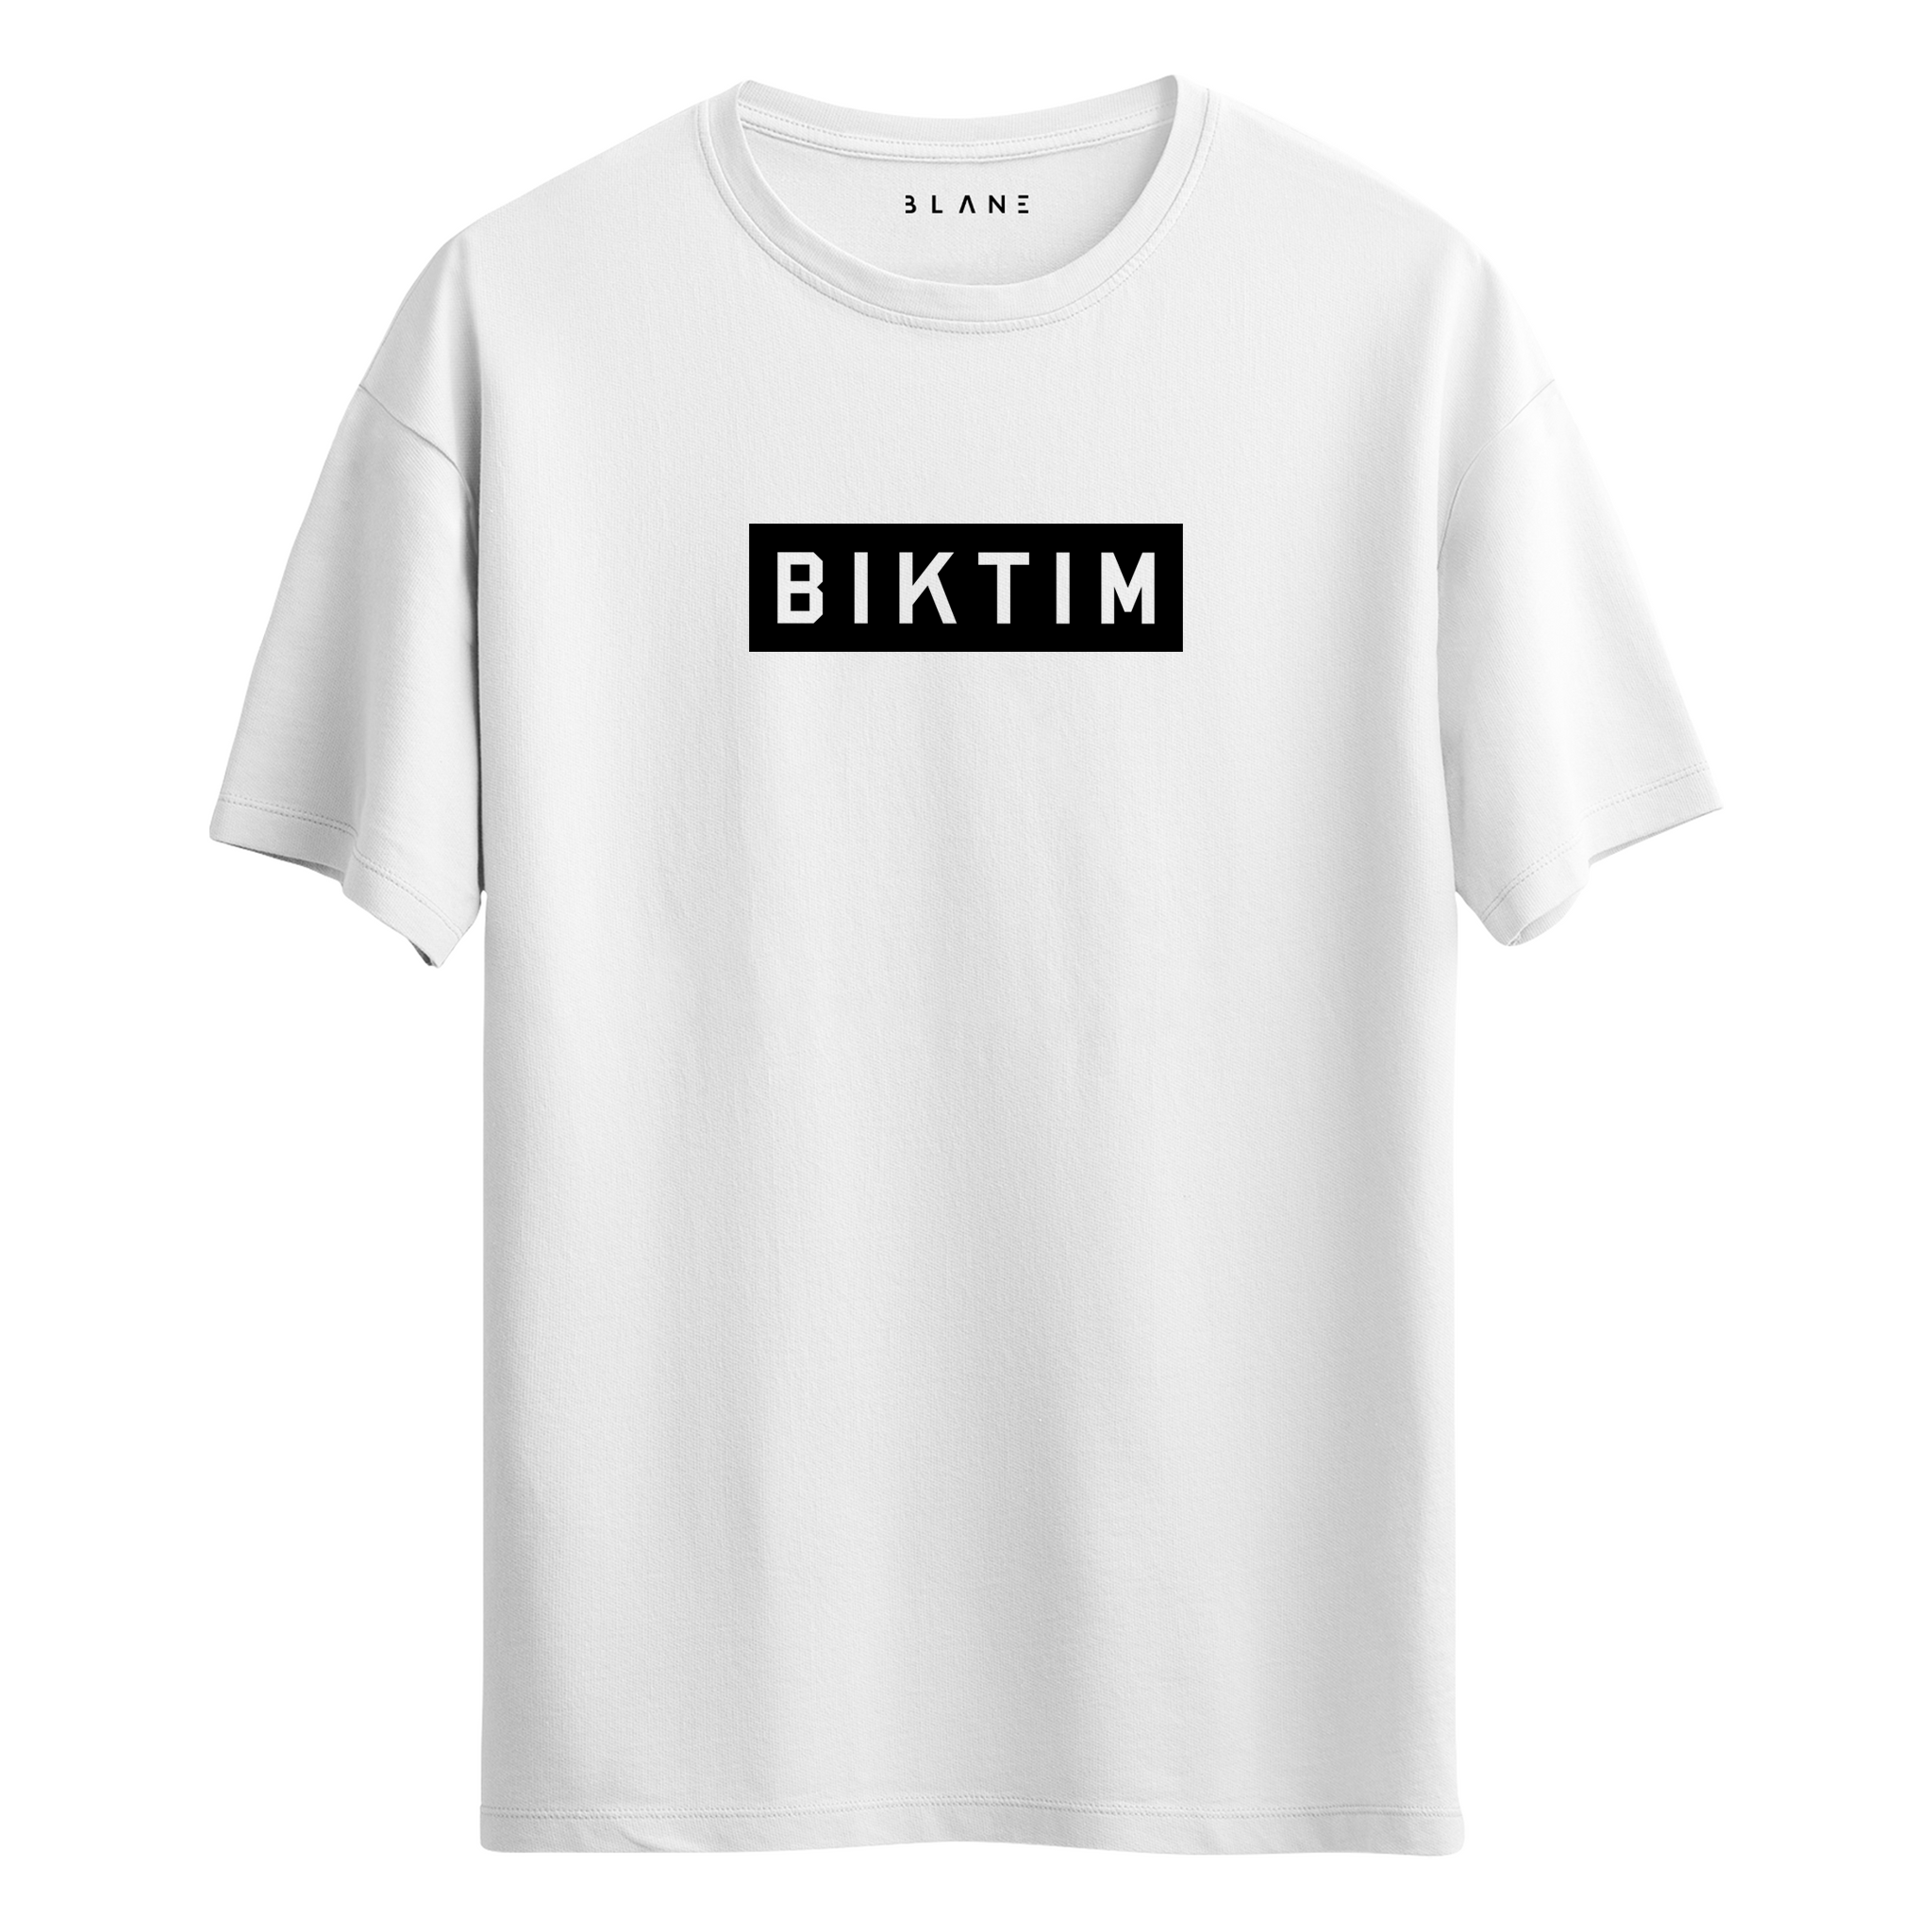 BIKTIM - T-Shirt